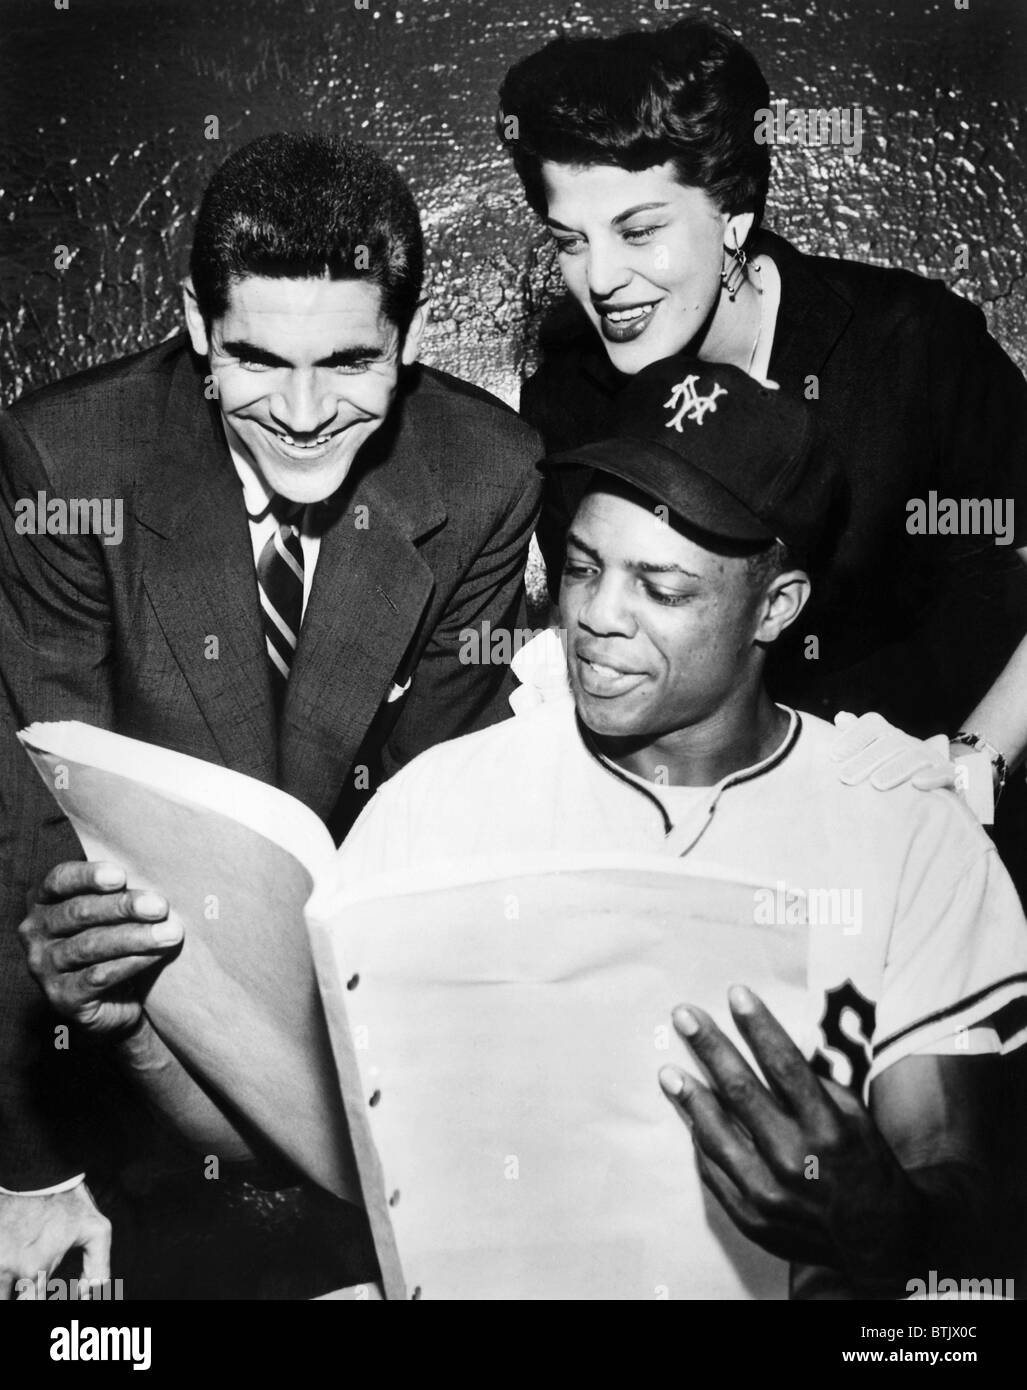 Ronny Graham, Kaye Ballard, New York Yankee Willie Mays (seated), c. 1954. Stock Photo